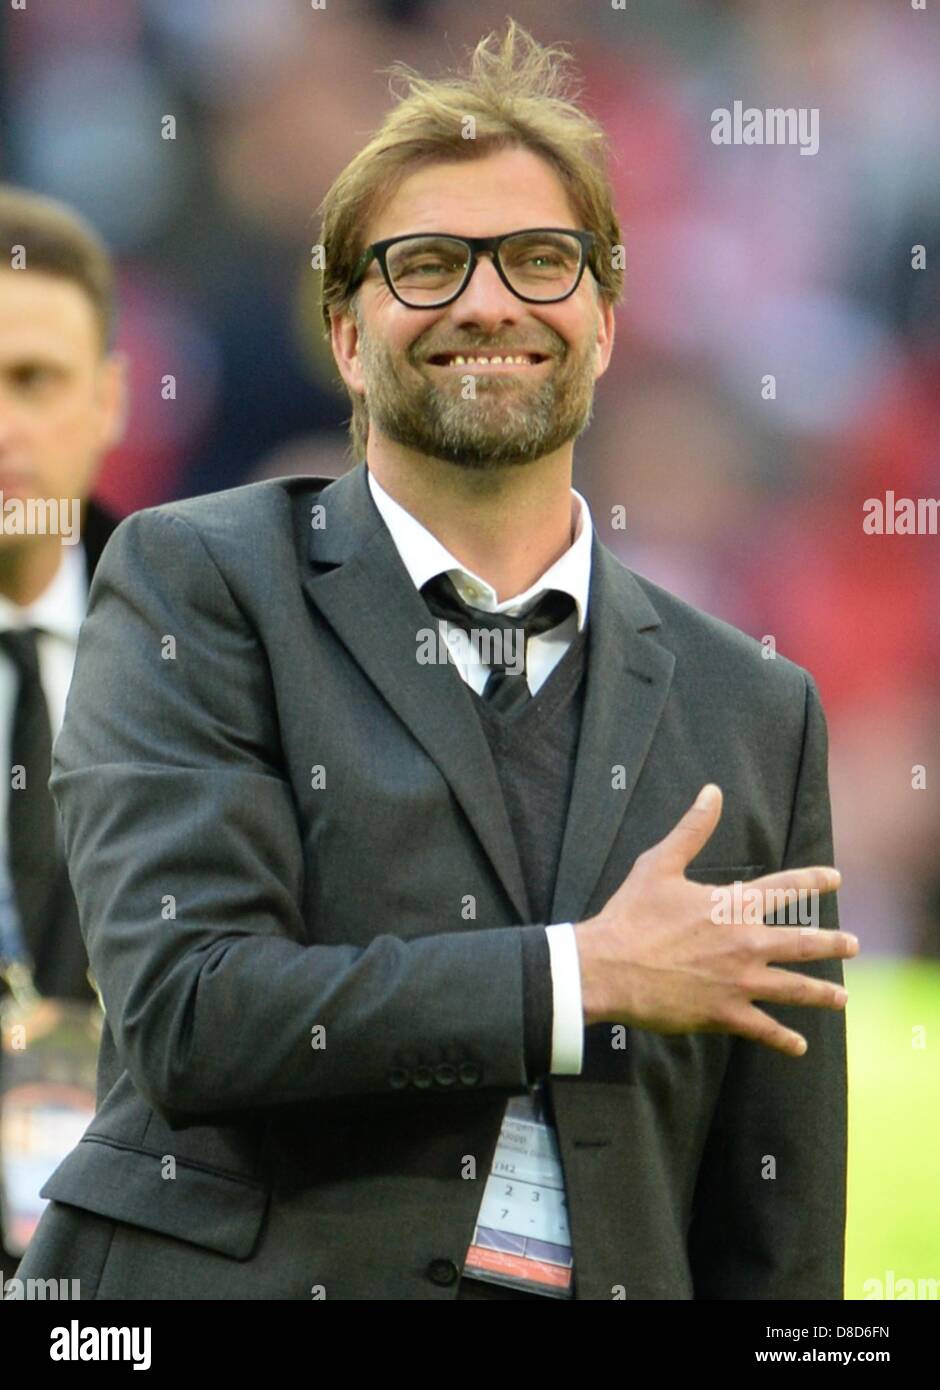 El entrenador del Dortmund, Juergen Klopp gestos antes de la final de la Liga de Campeones de fútbol de la UEFA entre el Borussia Dortmund y el Bayern de Múnich, en el estadio de Wembley en Londres, Inglaterra, 25 de mayo de 2013. Foto: Andreas Gebert/dpa +++(c) dpa - Bildfunk+++ Foto de stock